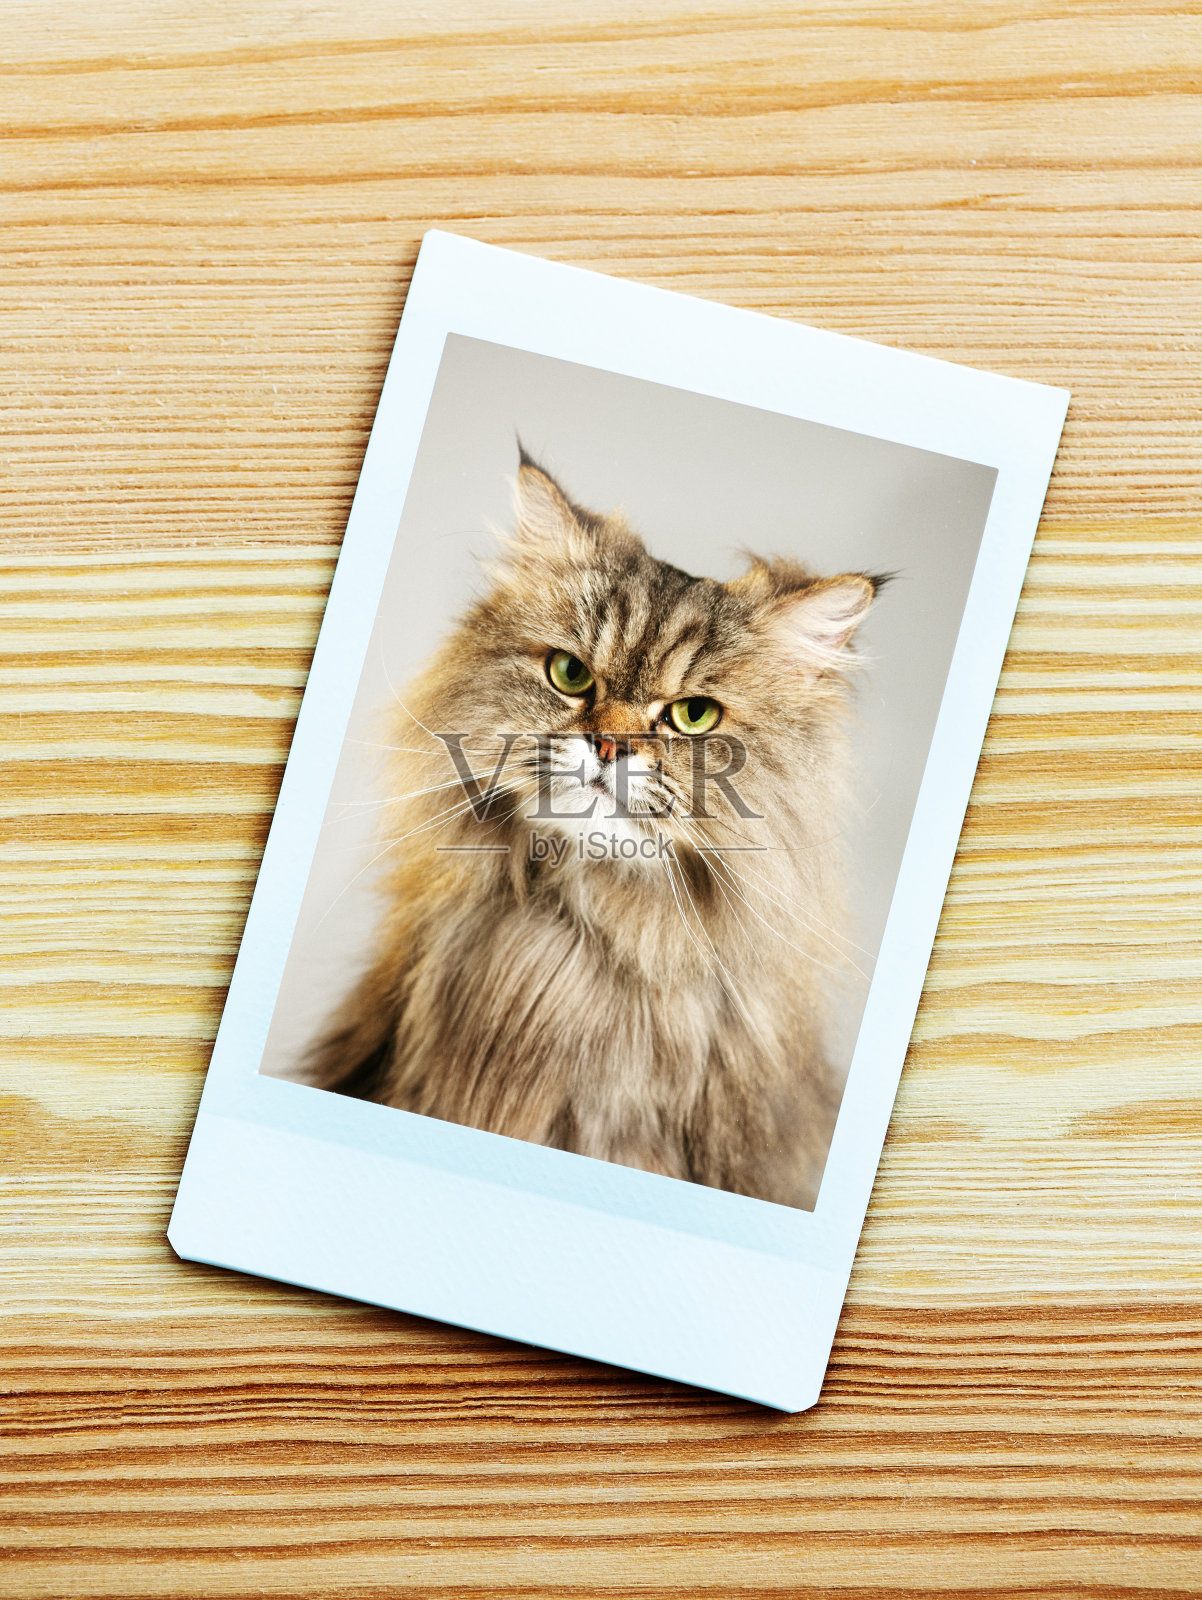 即时相机肖像的波斯猫看着相机照片摄影图片